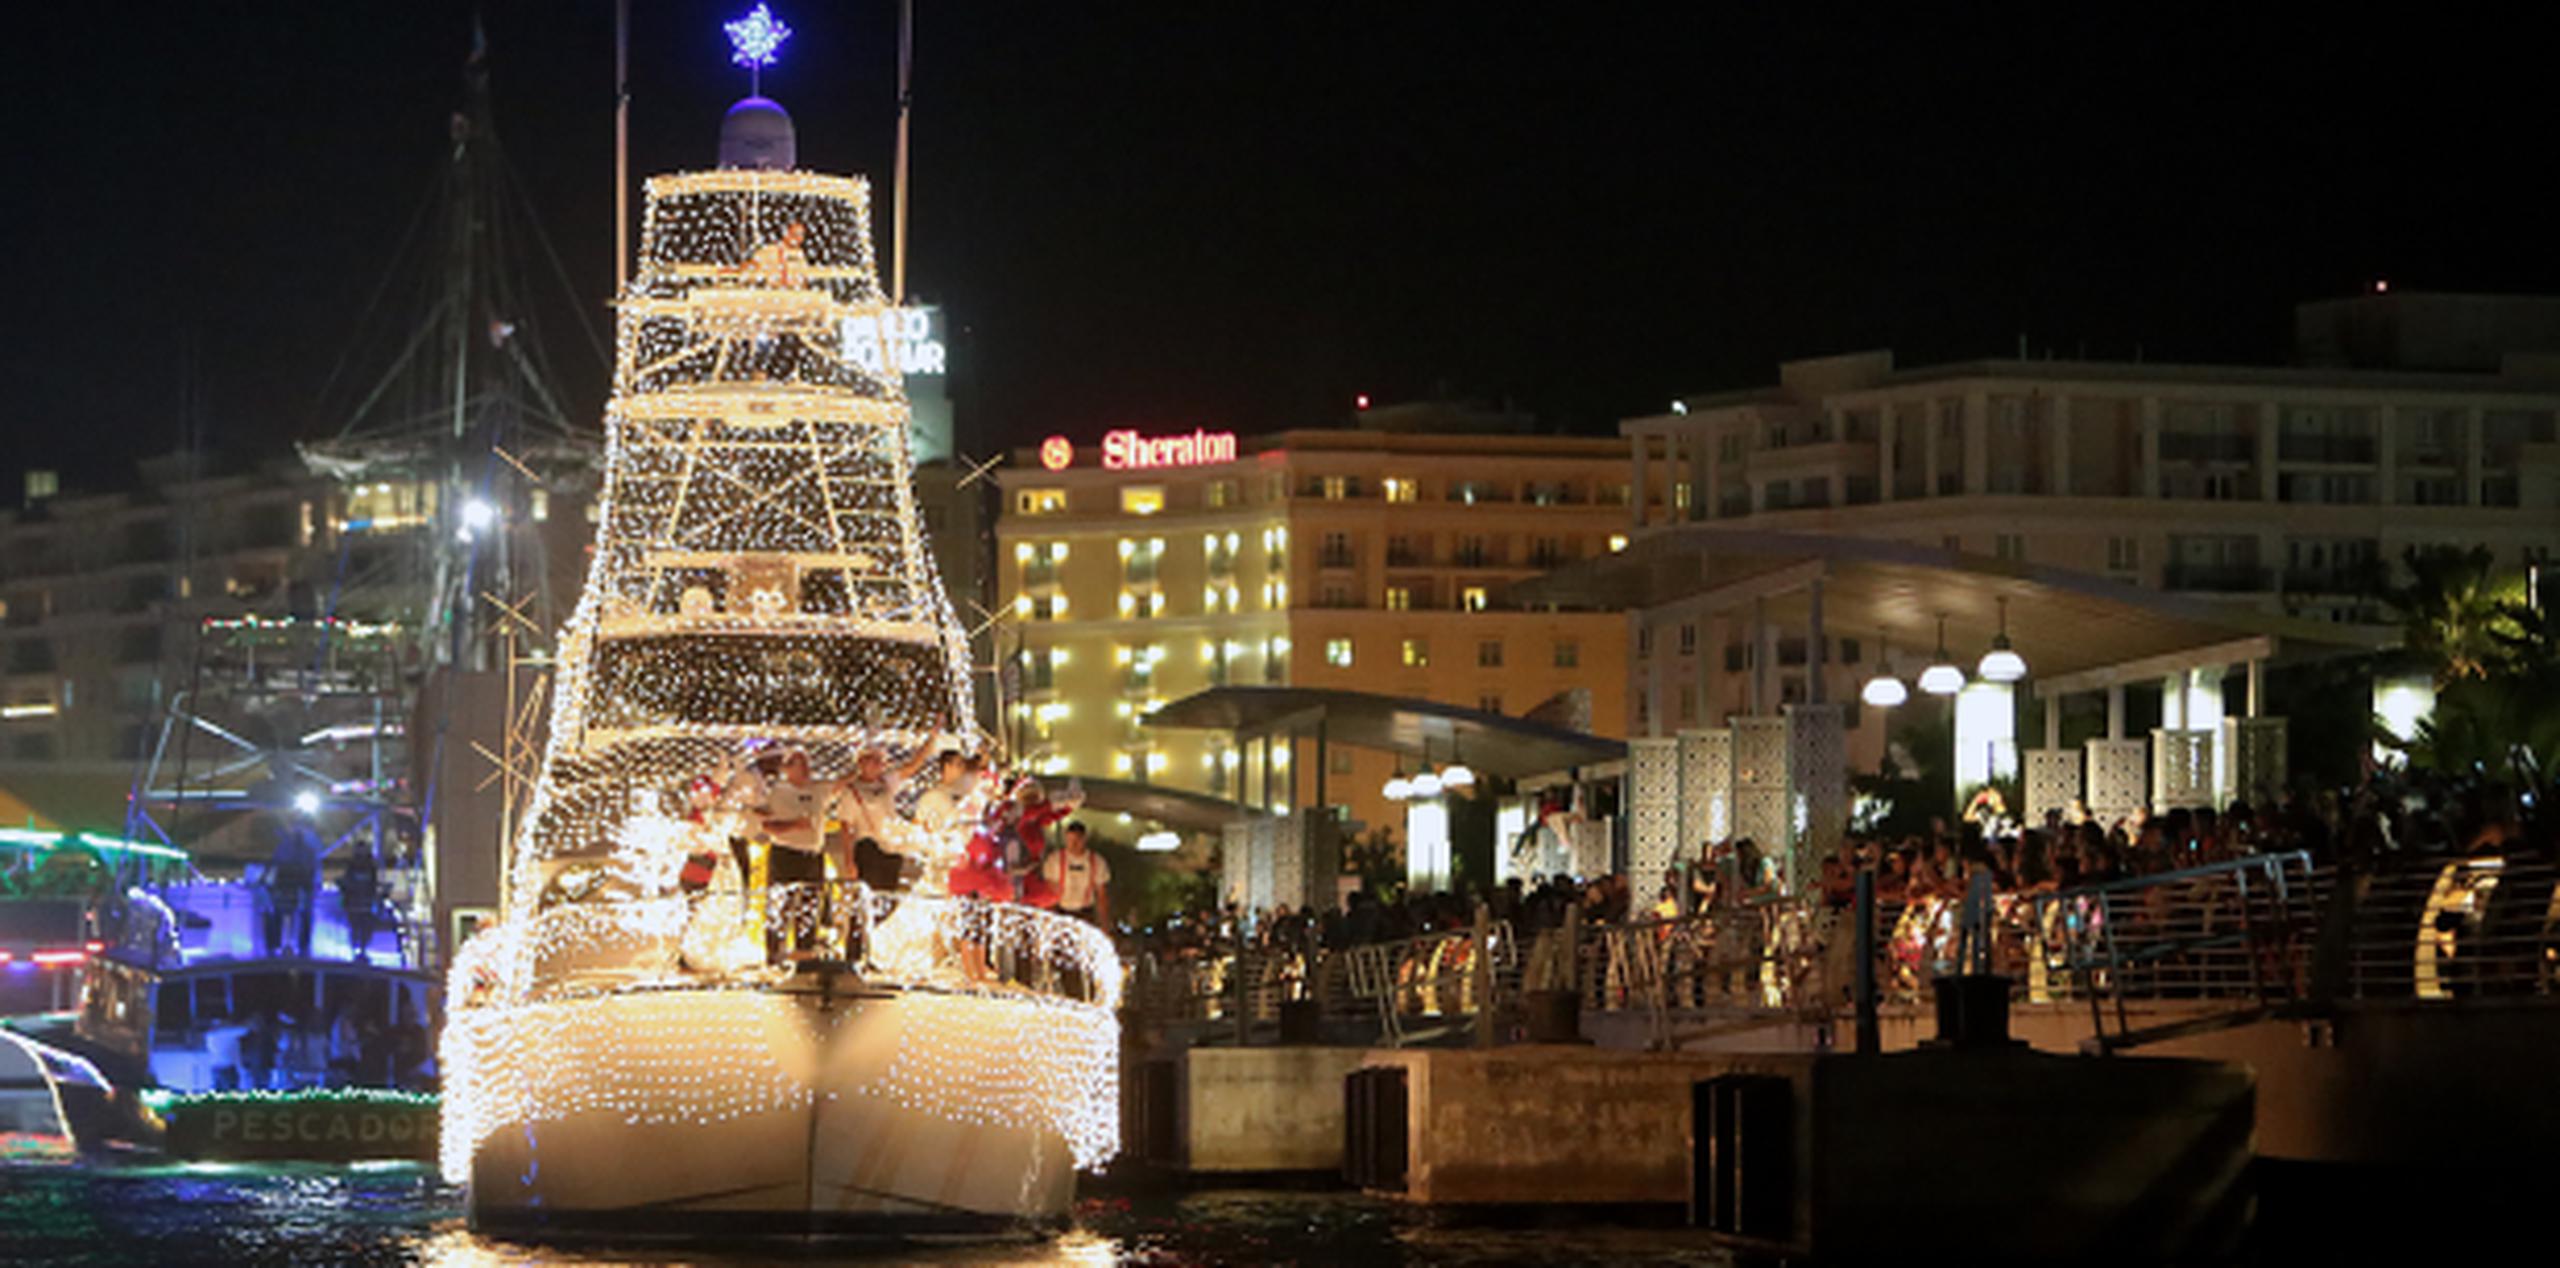 El desfile de embarcaciones iluminadas con motivos de Navidad por la bahía de San Juan se celebrará  las 6:00 p.m. frente al Muelle 6 y Bahía Urbana. (Archivo)